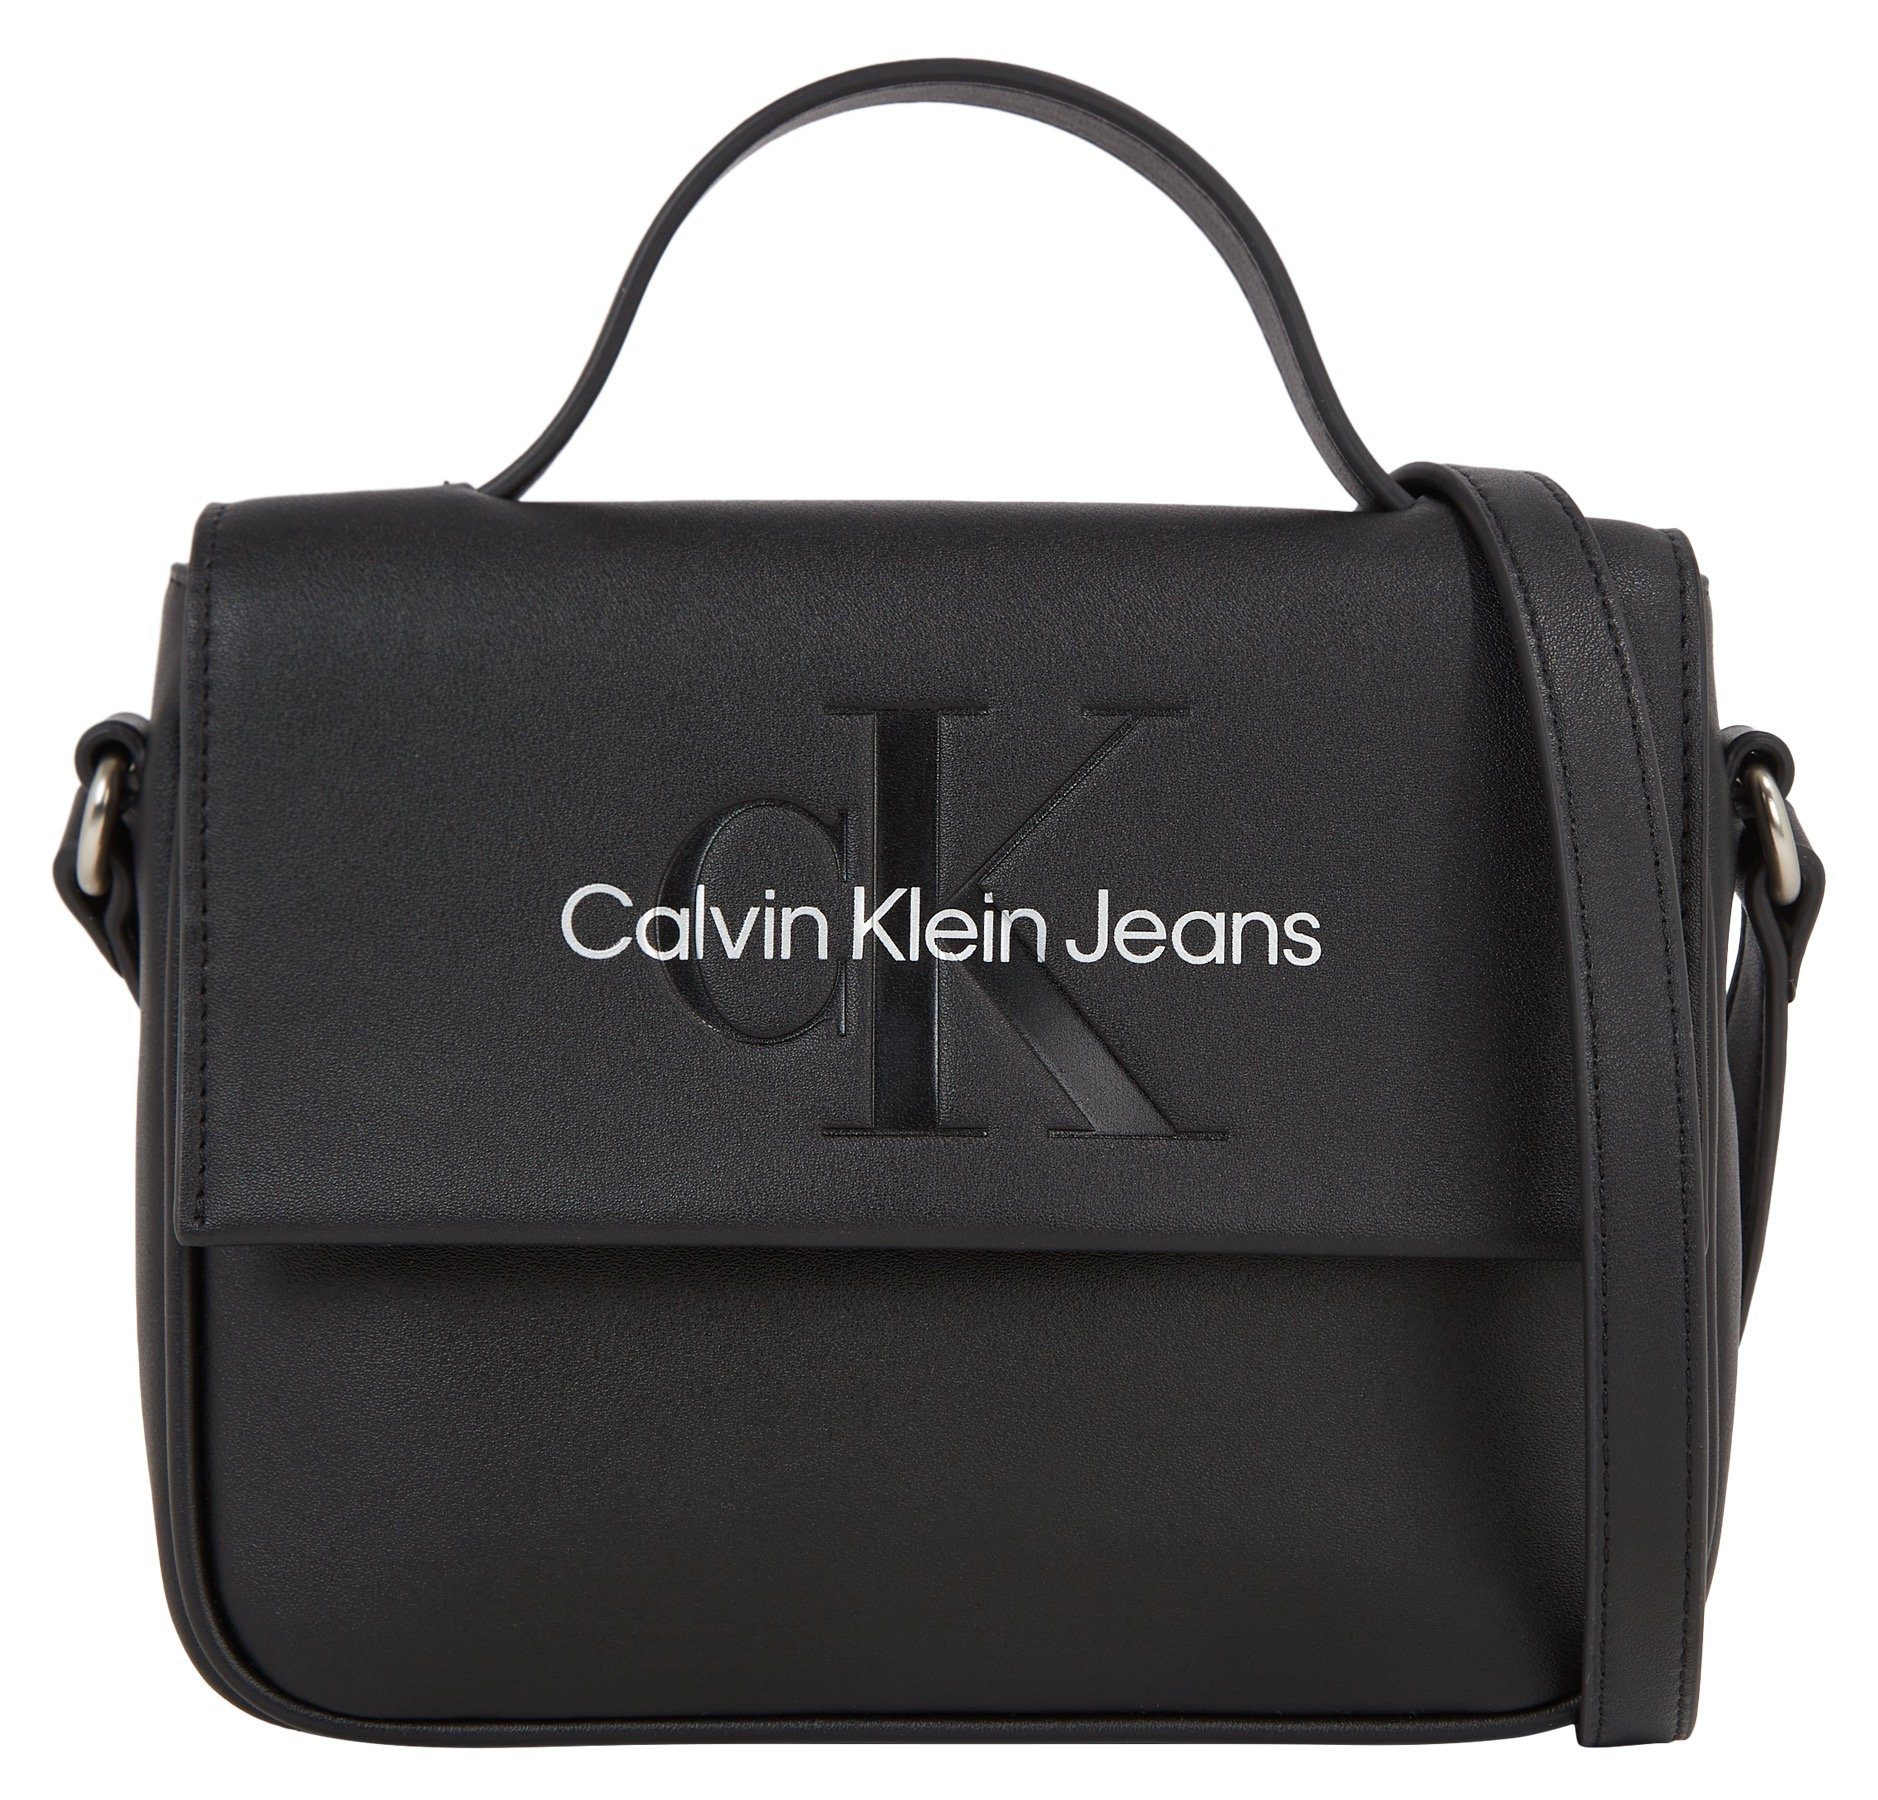 Calvin Klein Jeans im CB20 FLAP handlichen MONO, SCULPTED Umhängetasche Design BOXY